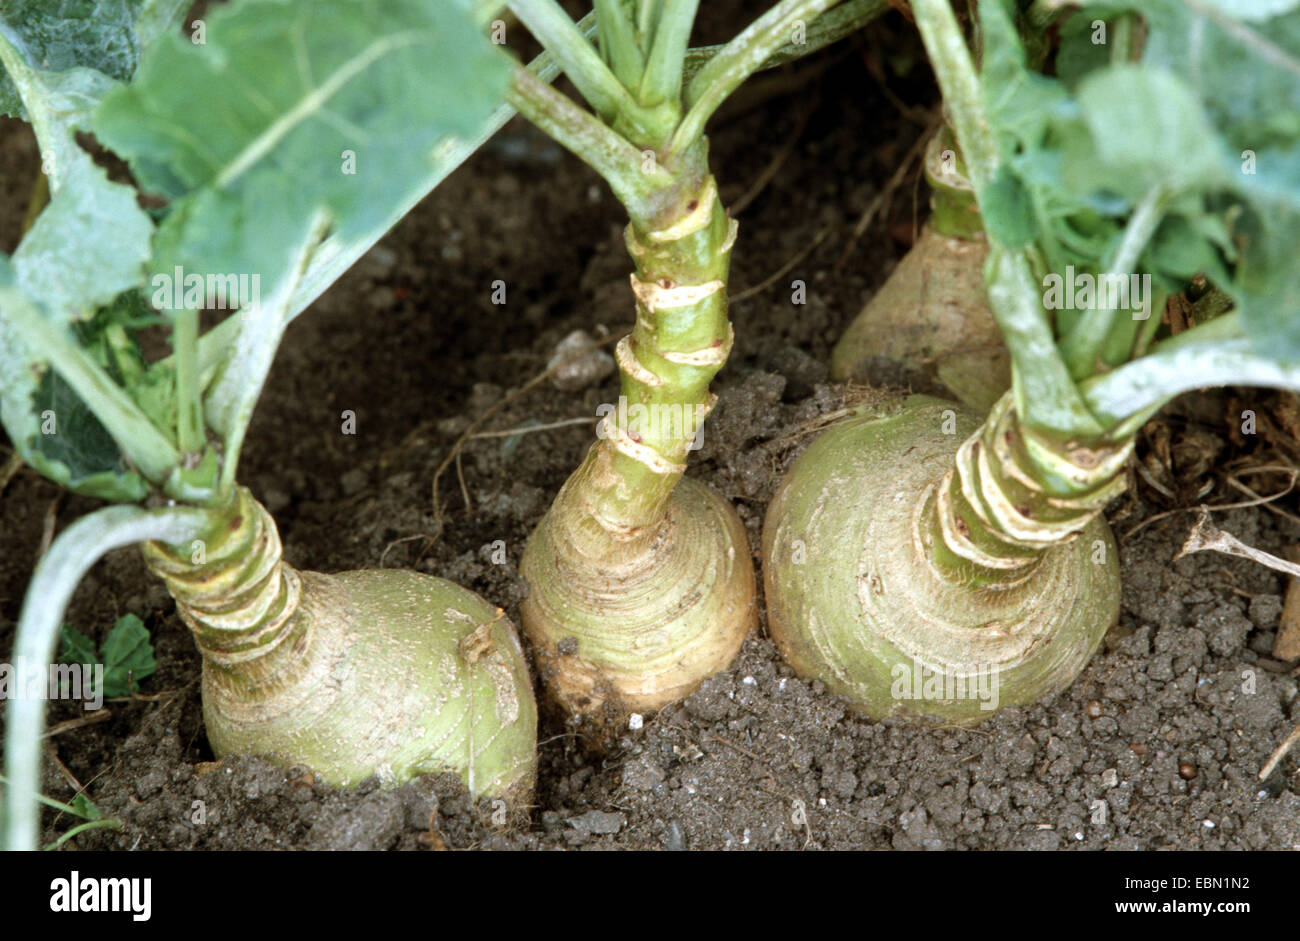 turnip (Brassica rapa rapa), turnips in soil Stock Photo